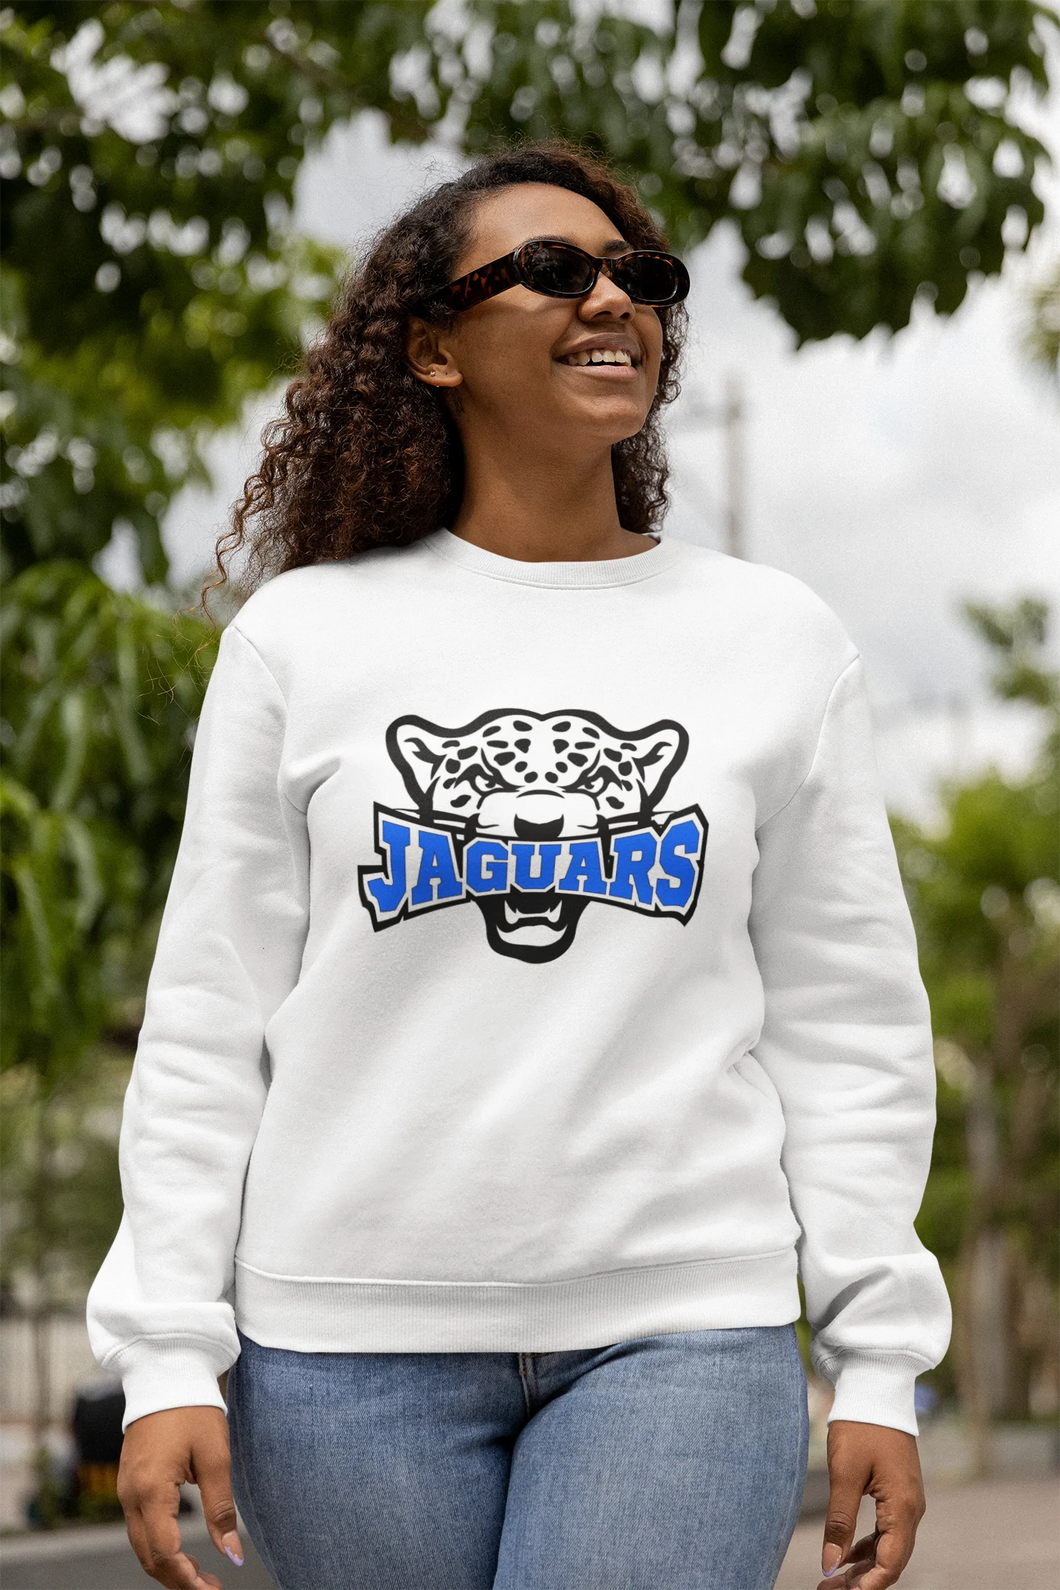 Jaguars Sports Unisex White Sweatshirt (Adult Sizes)